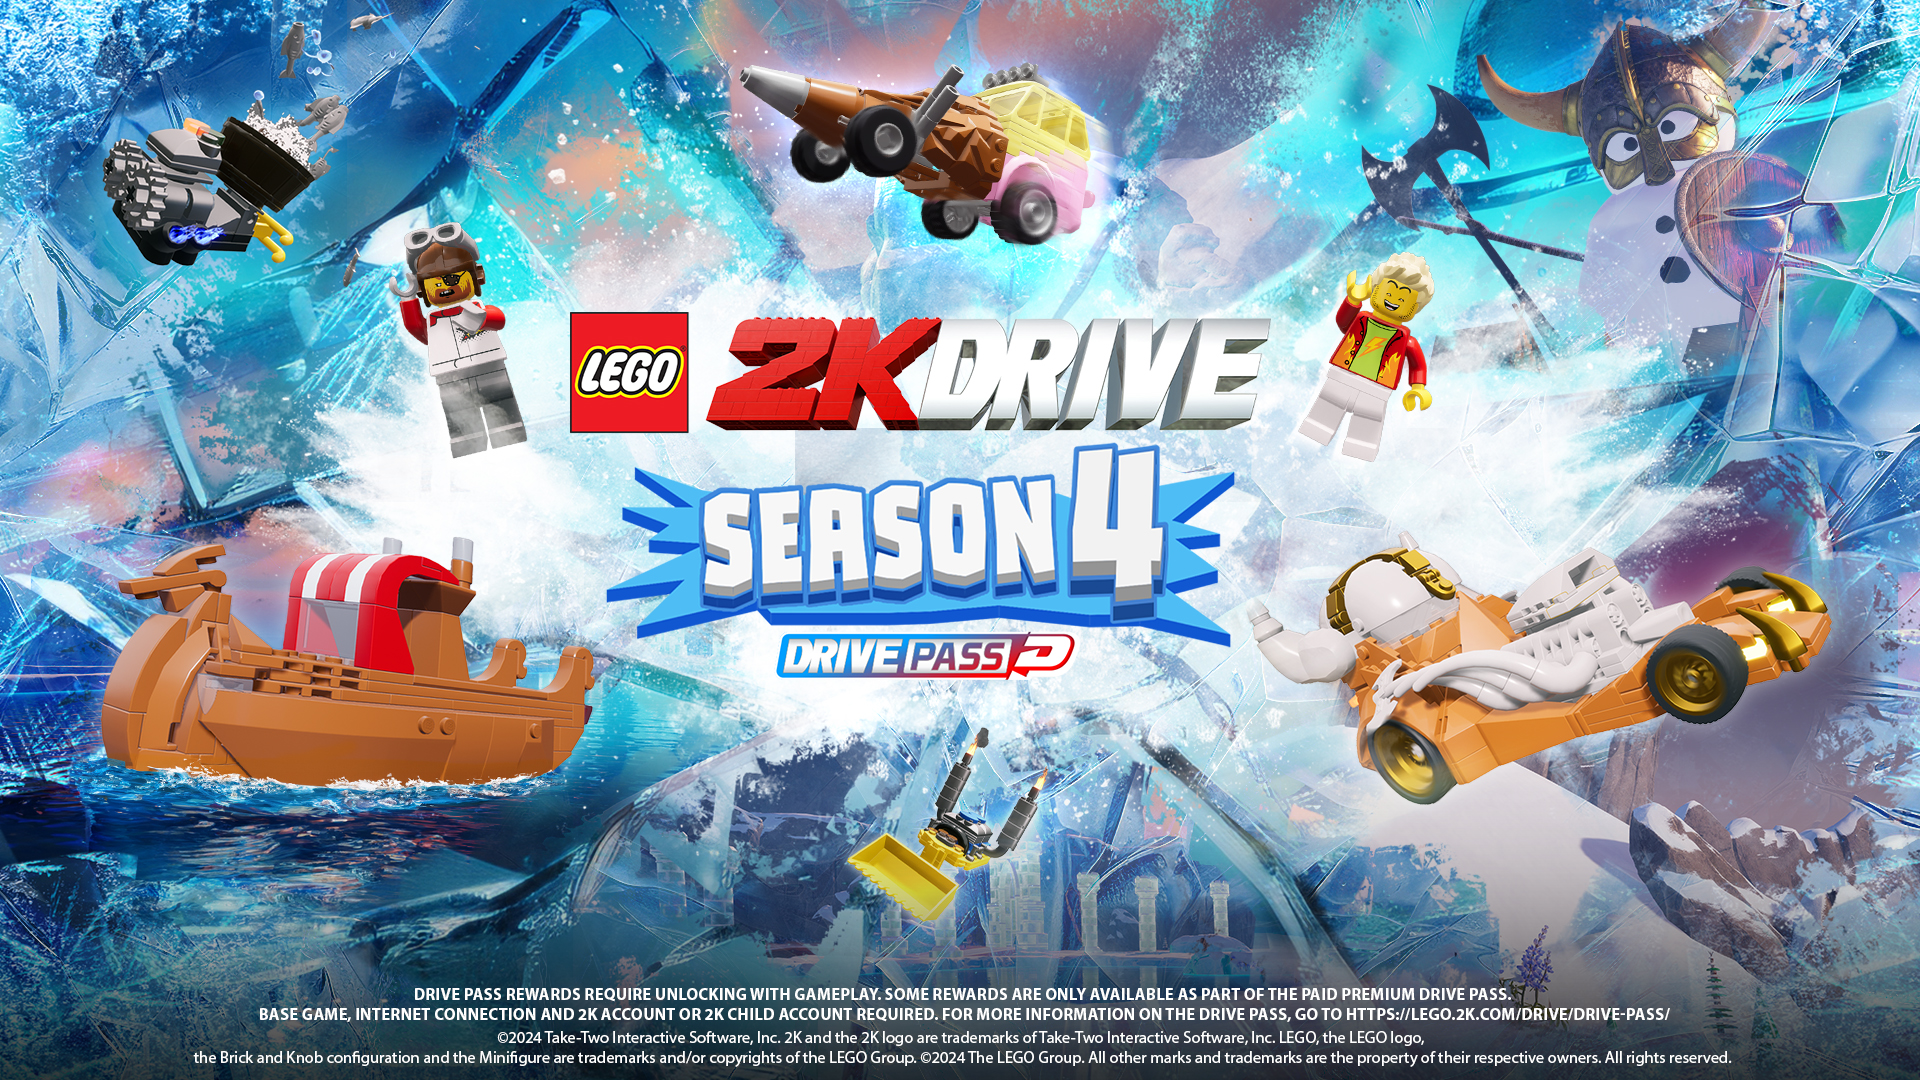 Drive Pass Season 4 Lego 2K Drive